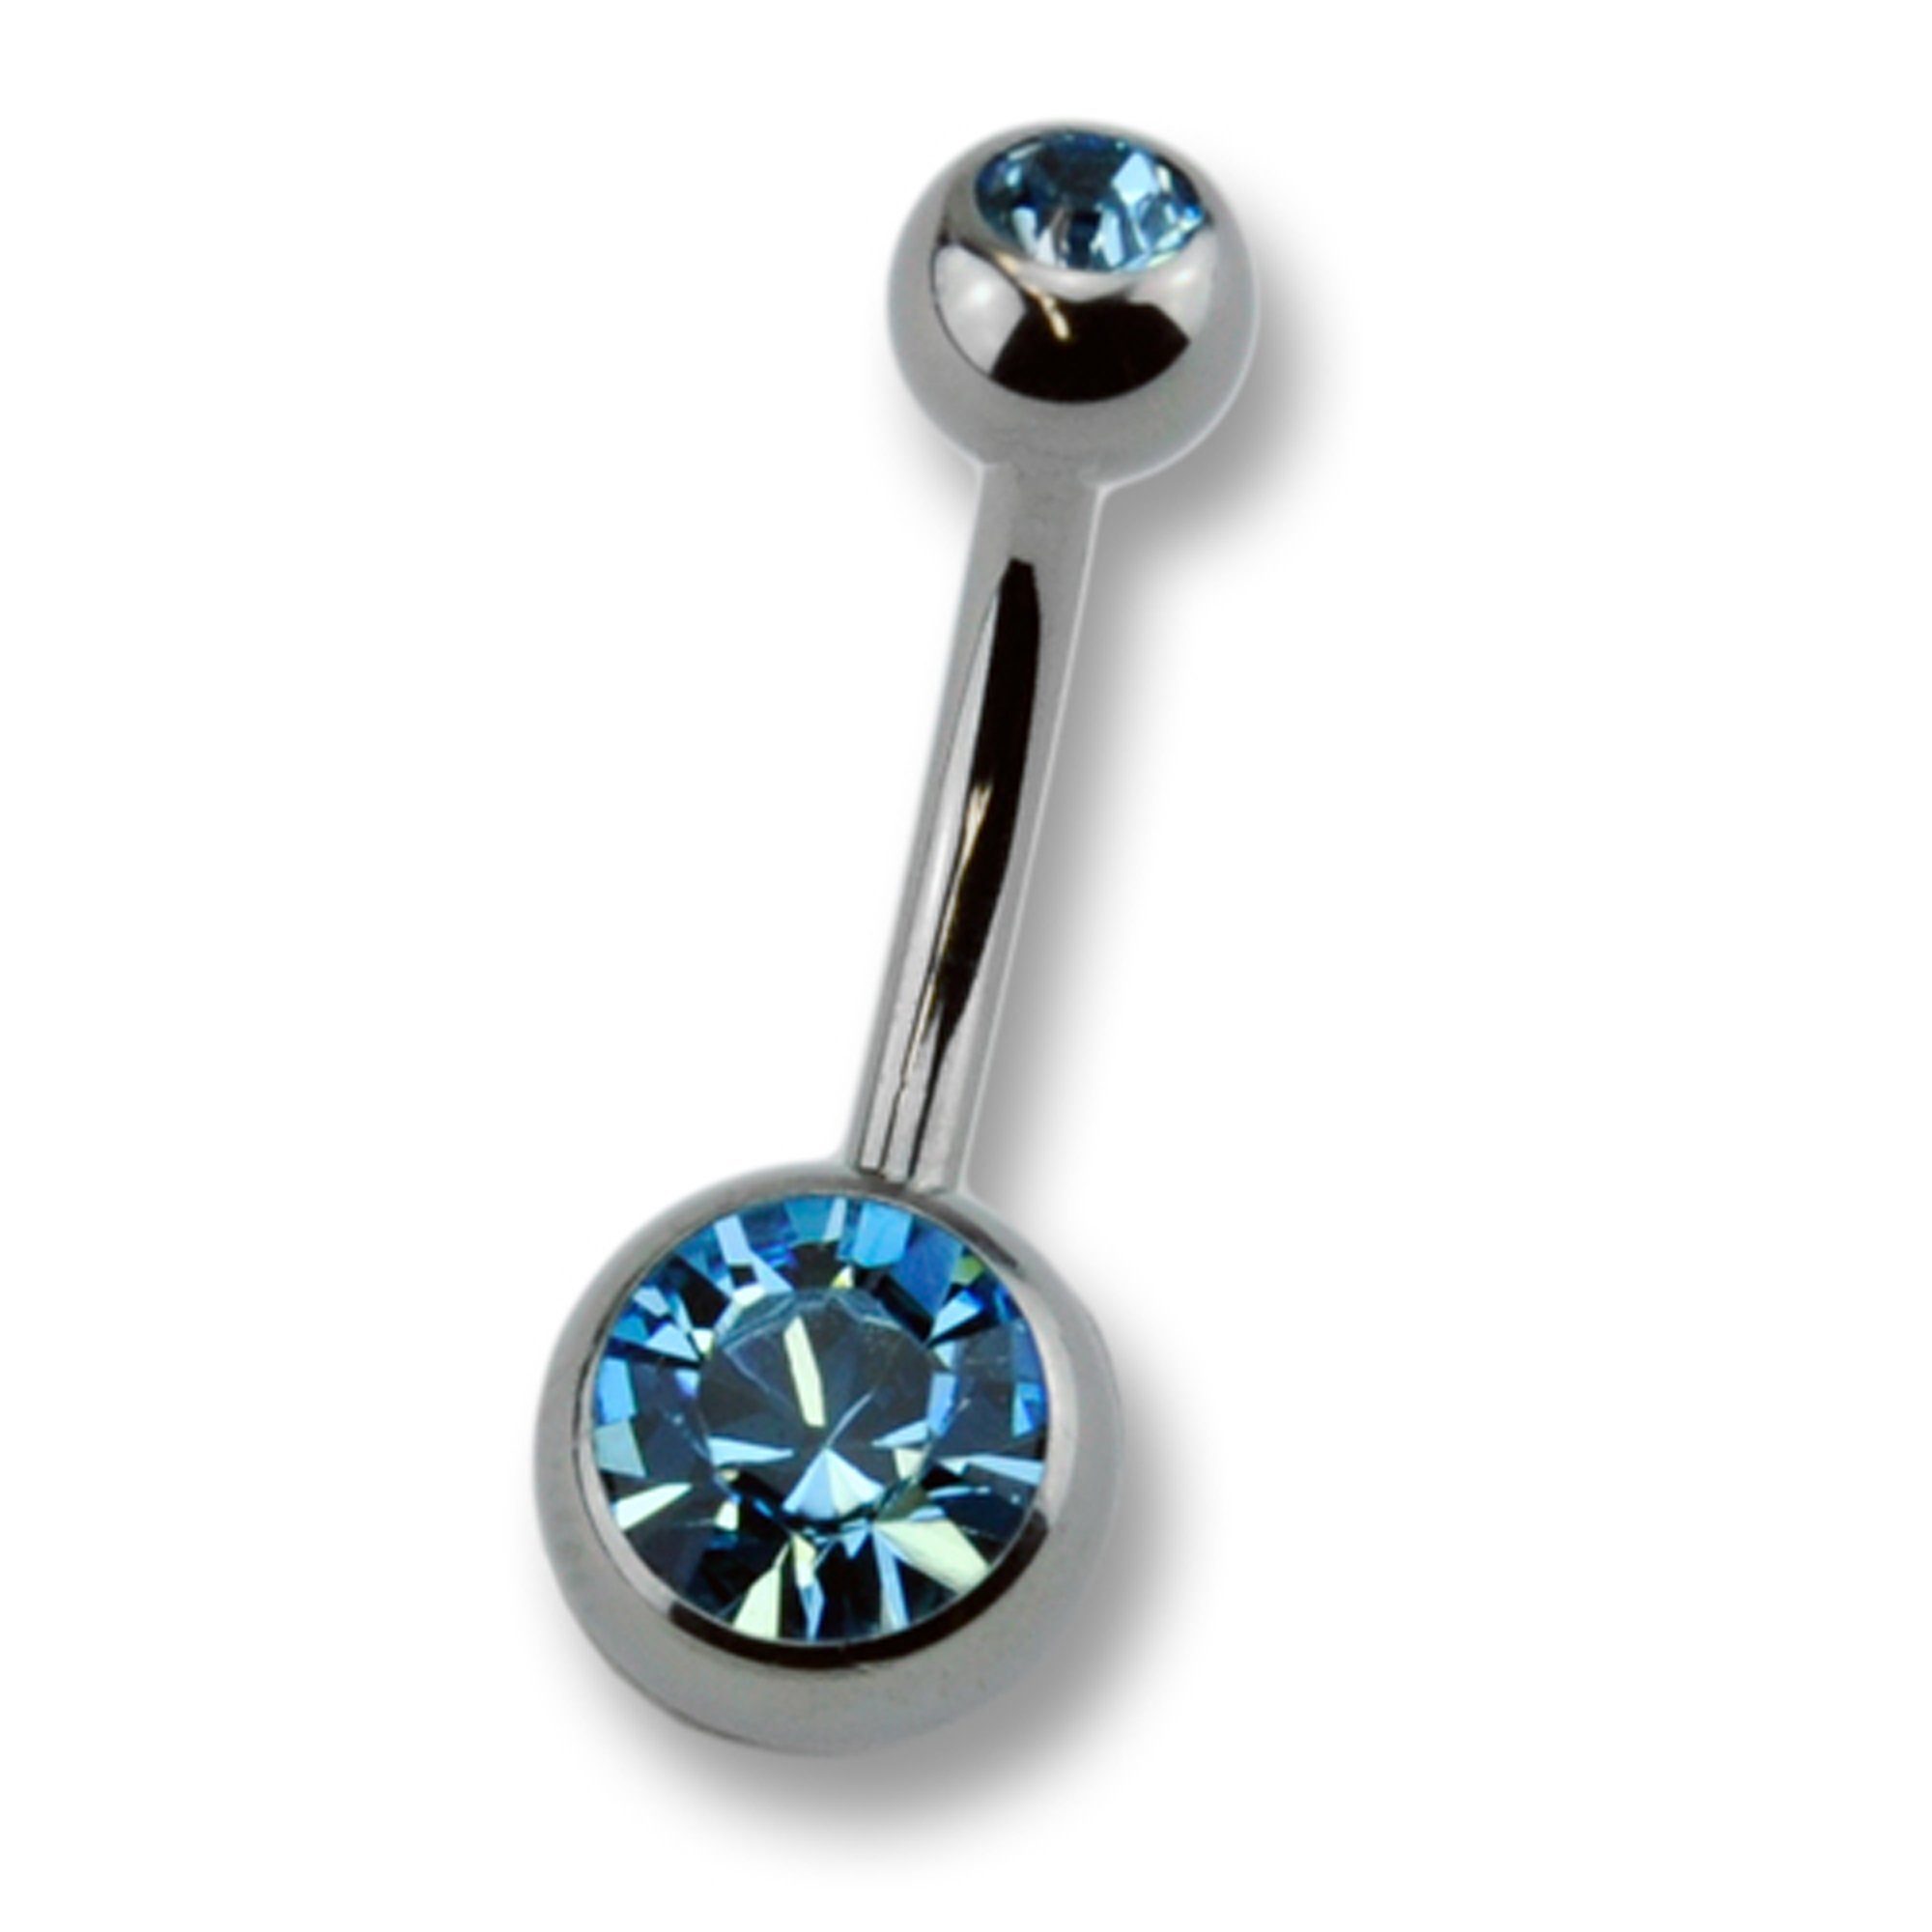 Zeeme Bauchnabelpiercing Titan silberfarben Kristall Verarbeitung dunkelblau, Hochwertige